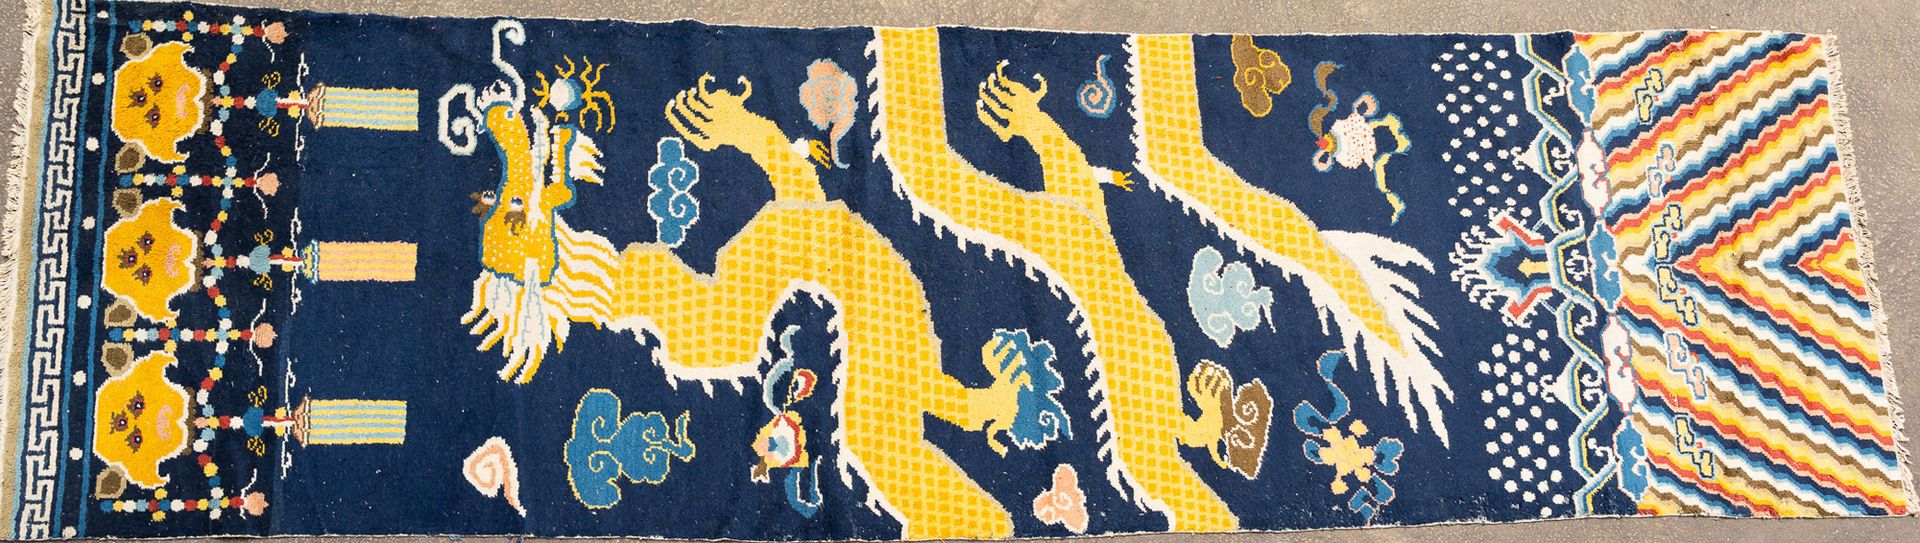 Large Tibet Carpet Grand tapis tibétain, textile ondulé avec dragon jaune sur fo&hellip;